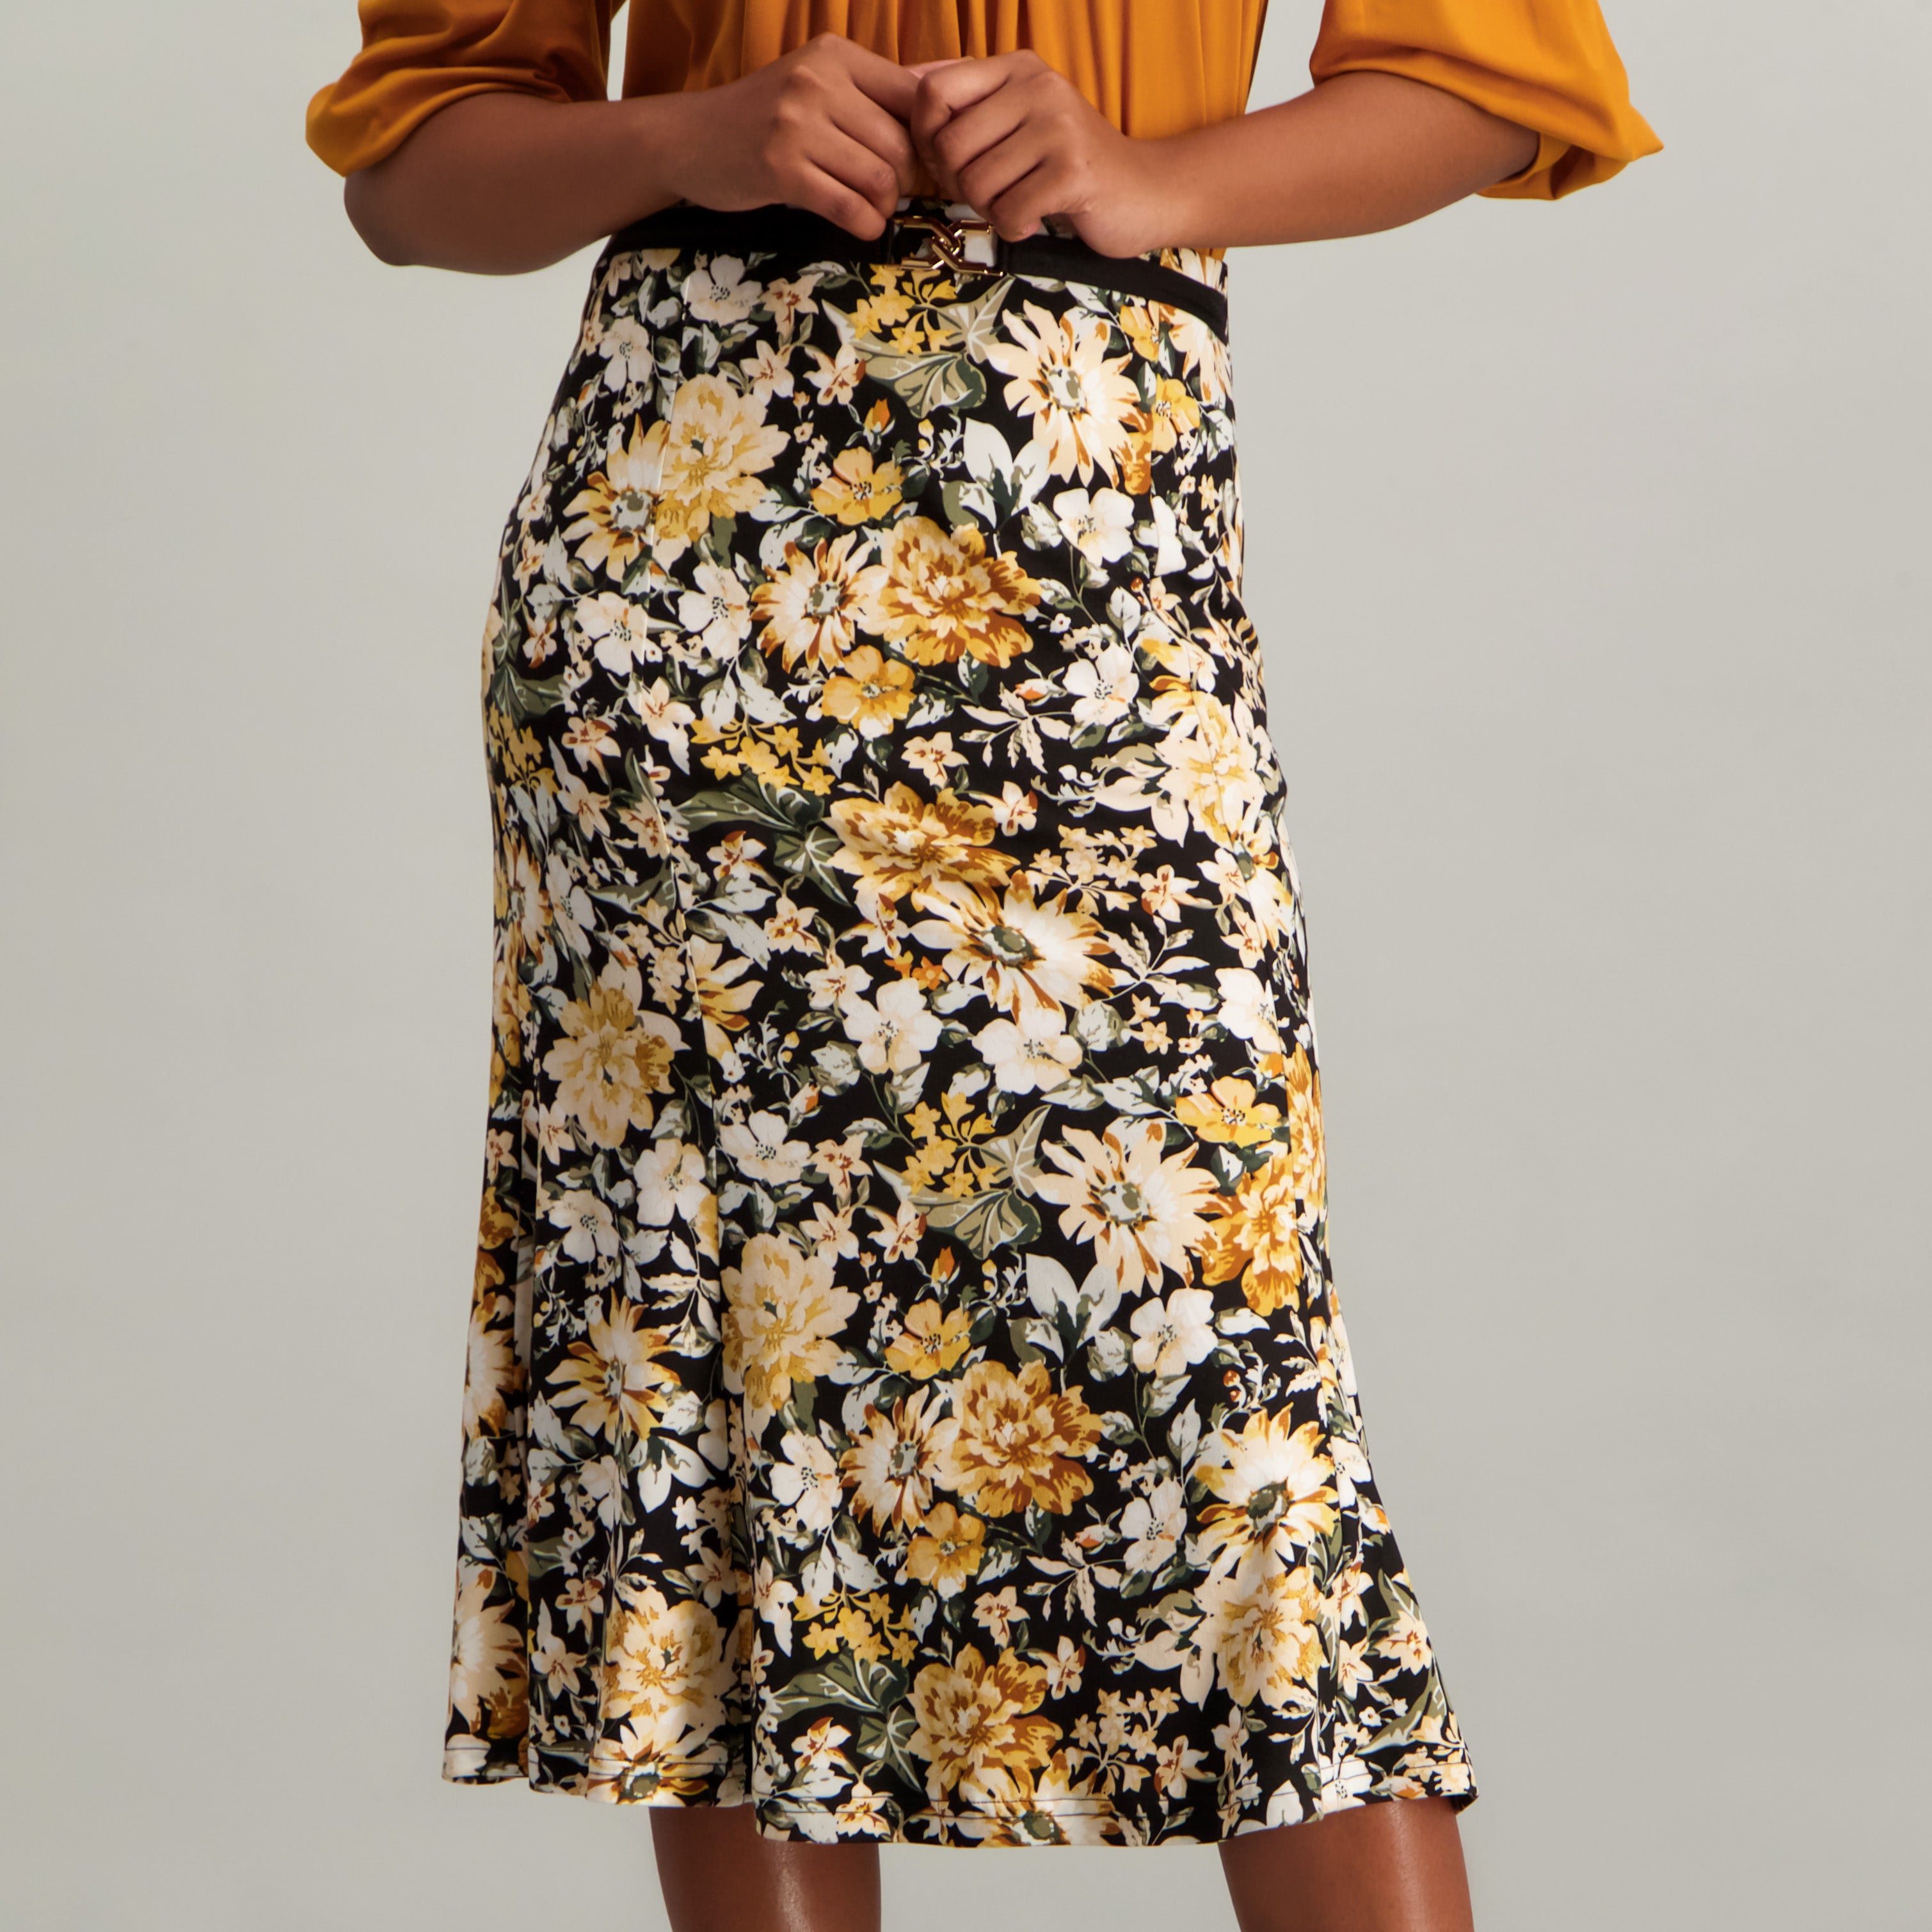 Printed Skirt - Fashion Fusion 189.99 Fashion Fusion